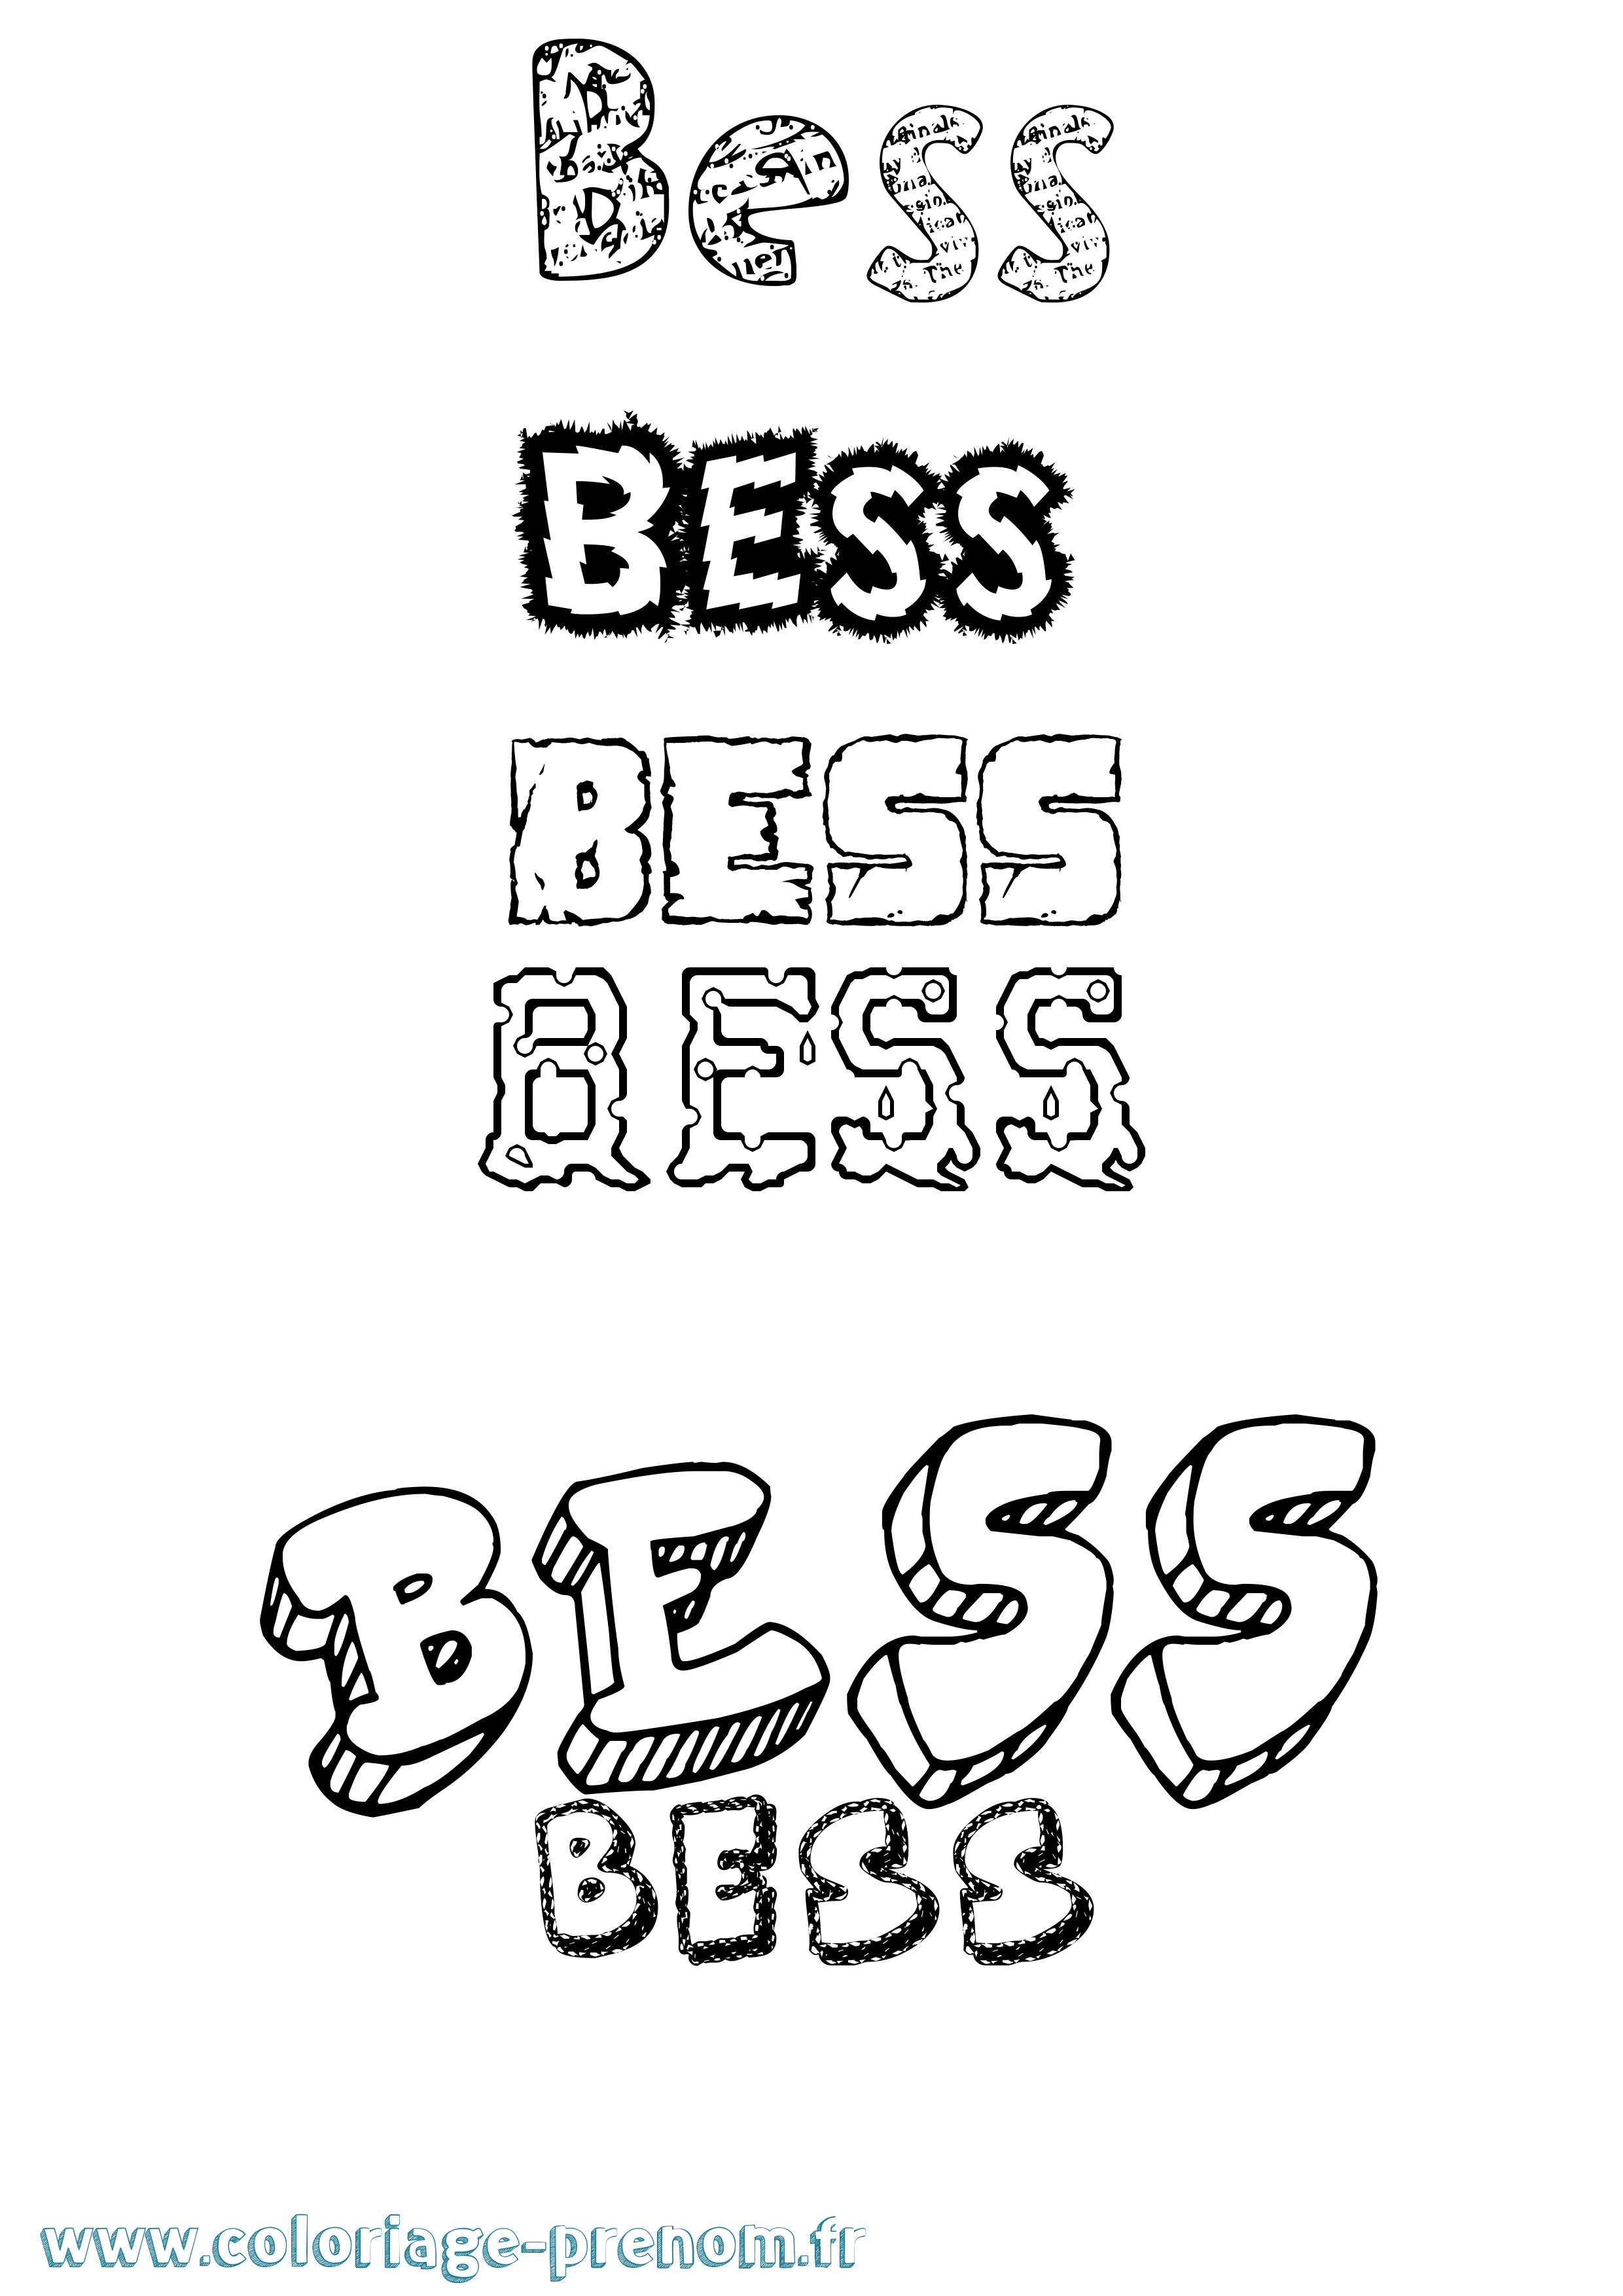 Coloriage prénom Bess Destructuré